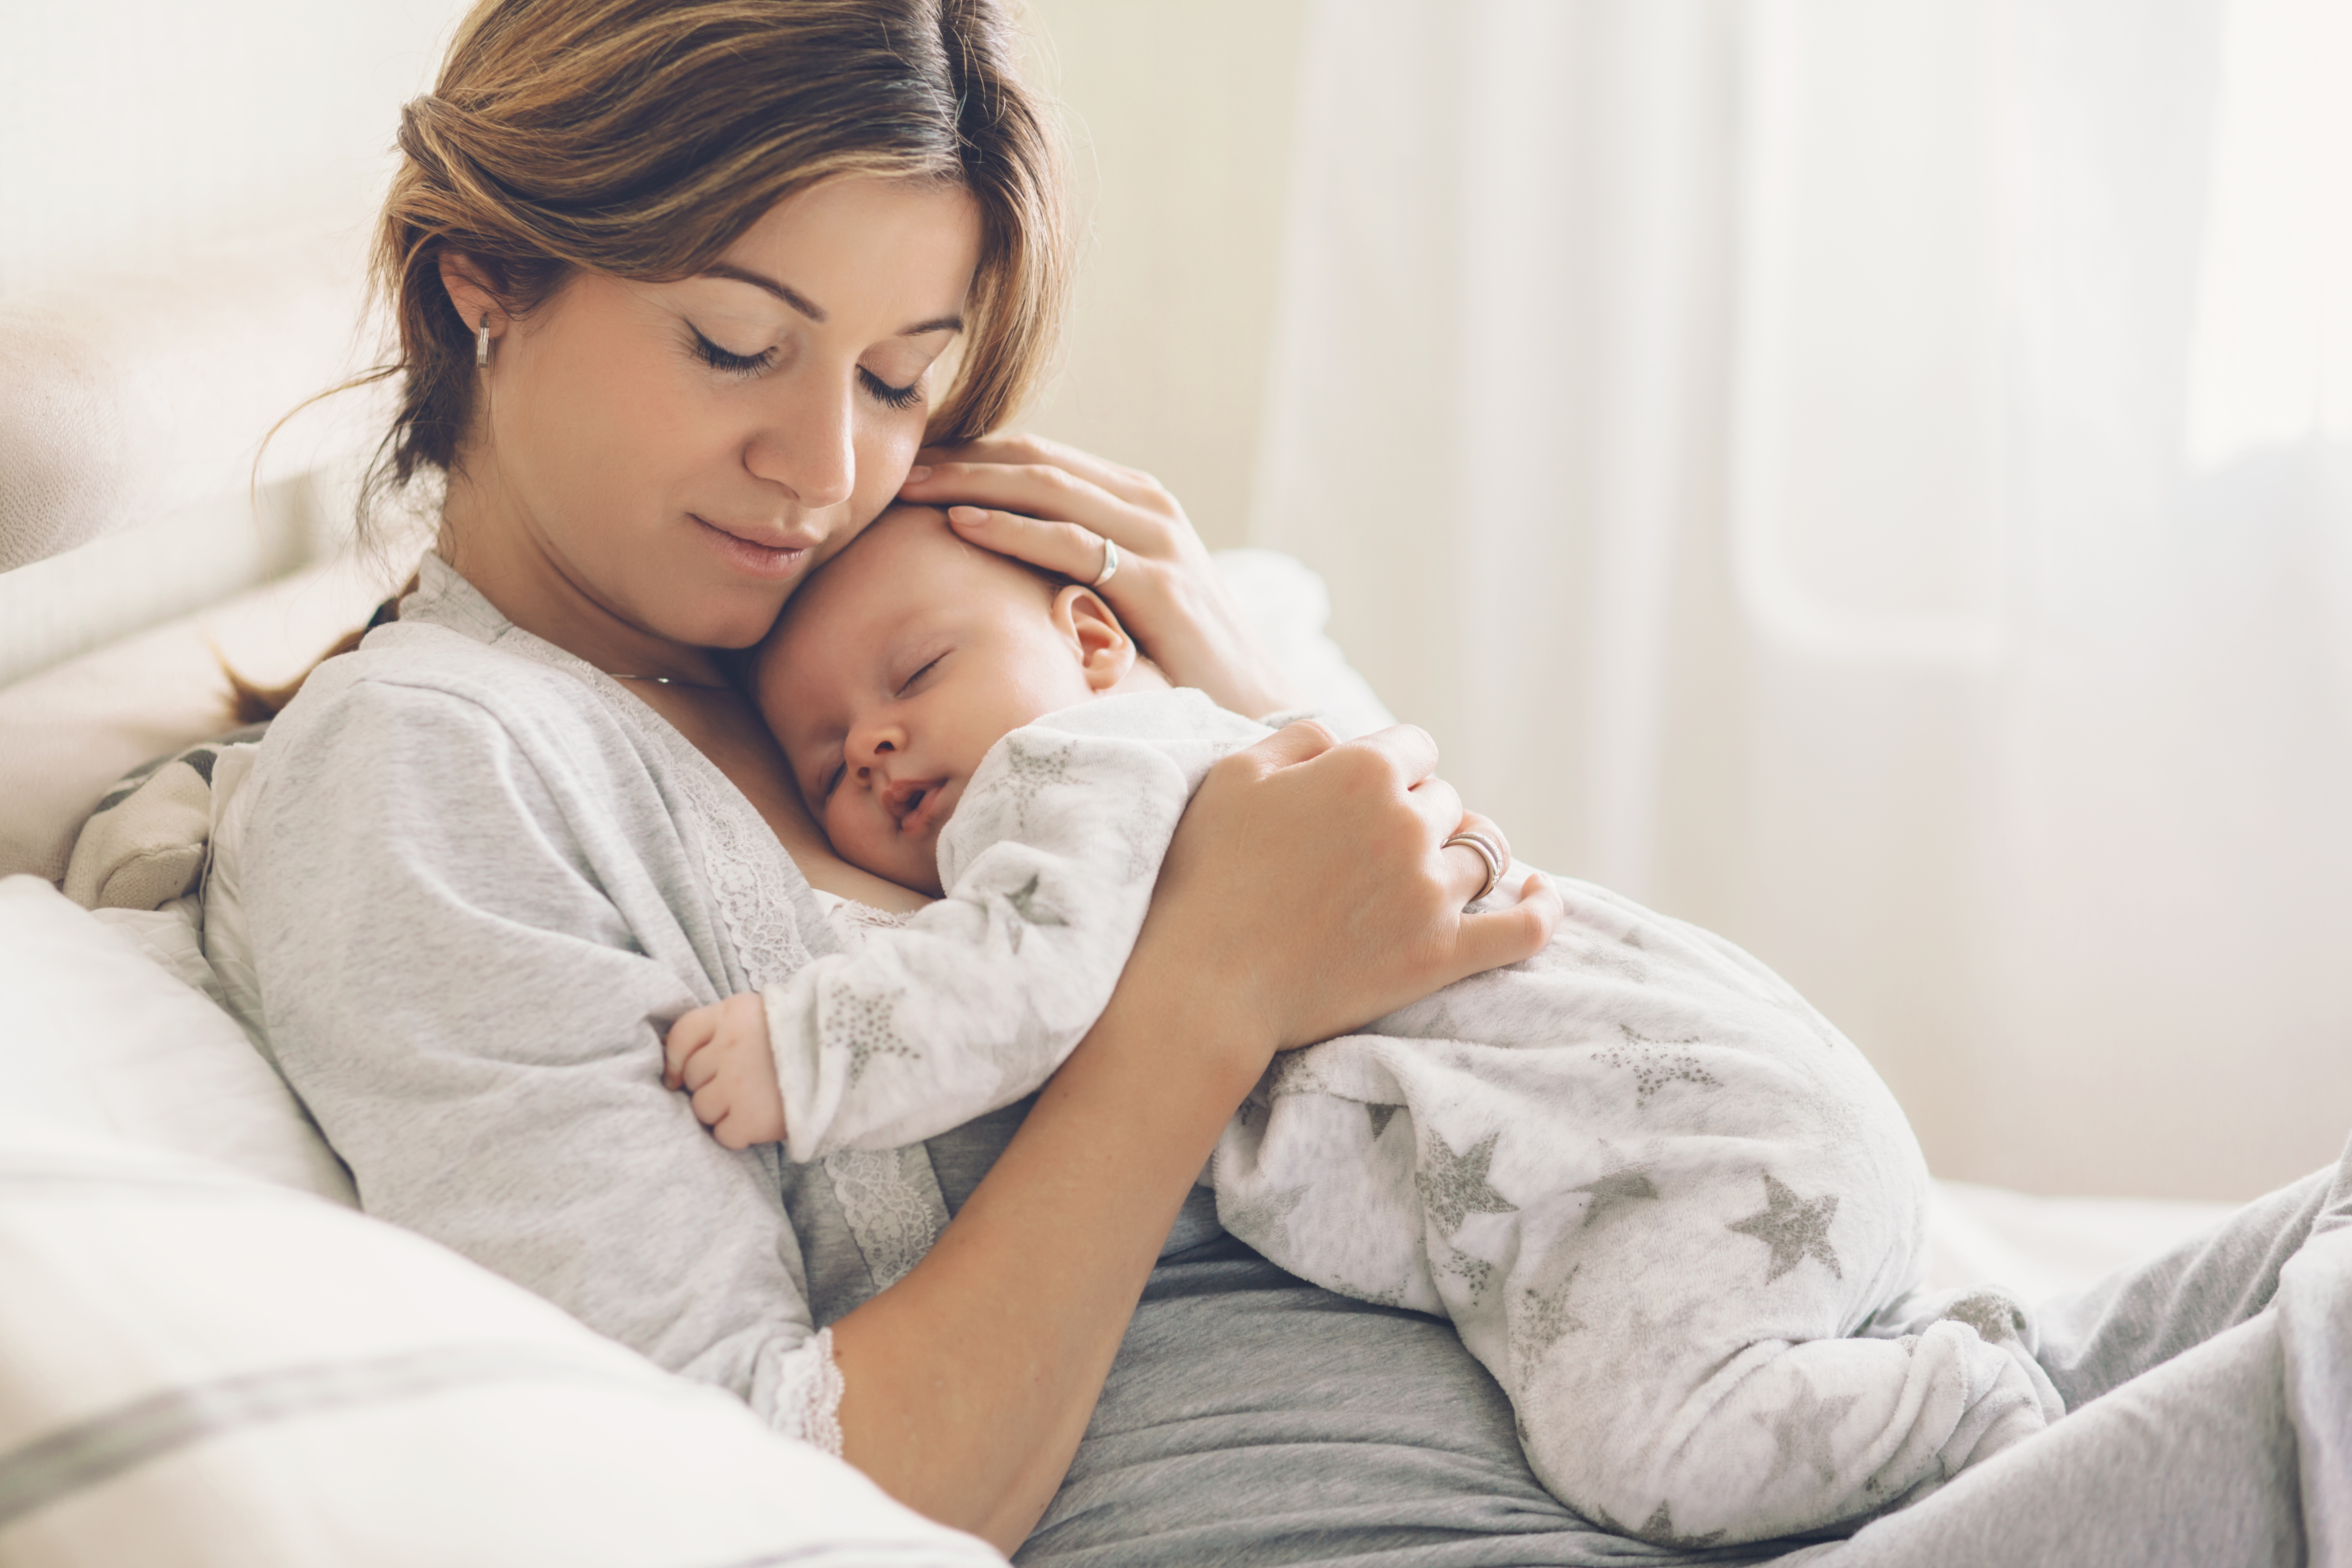 Une femme avec un bébé dormant sur sa poitrine | Source : Shutterstock